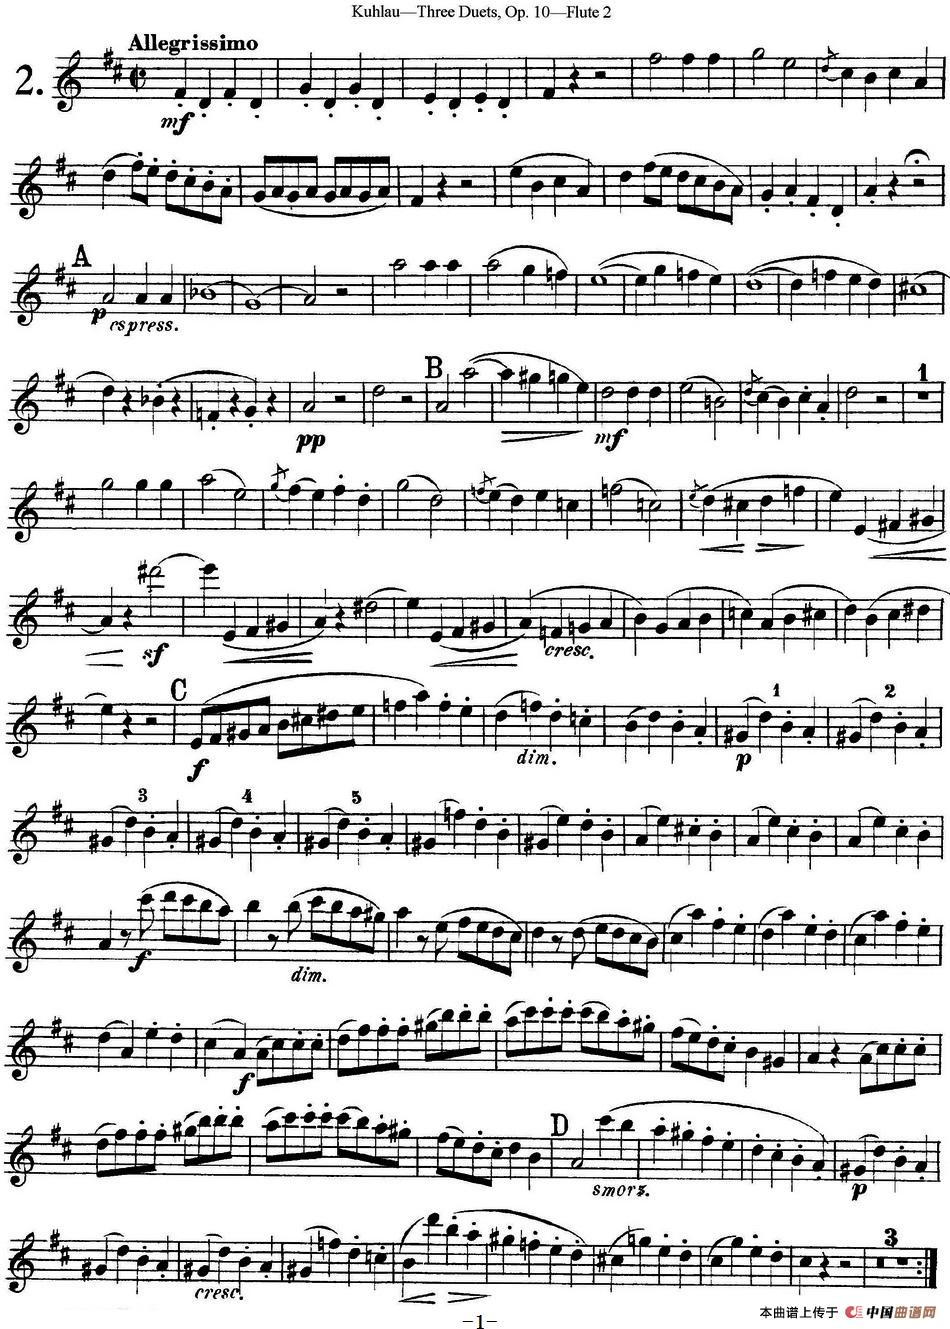 库劳长笛二重奏练习曲Op.10——Flute 2（No.2）